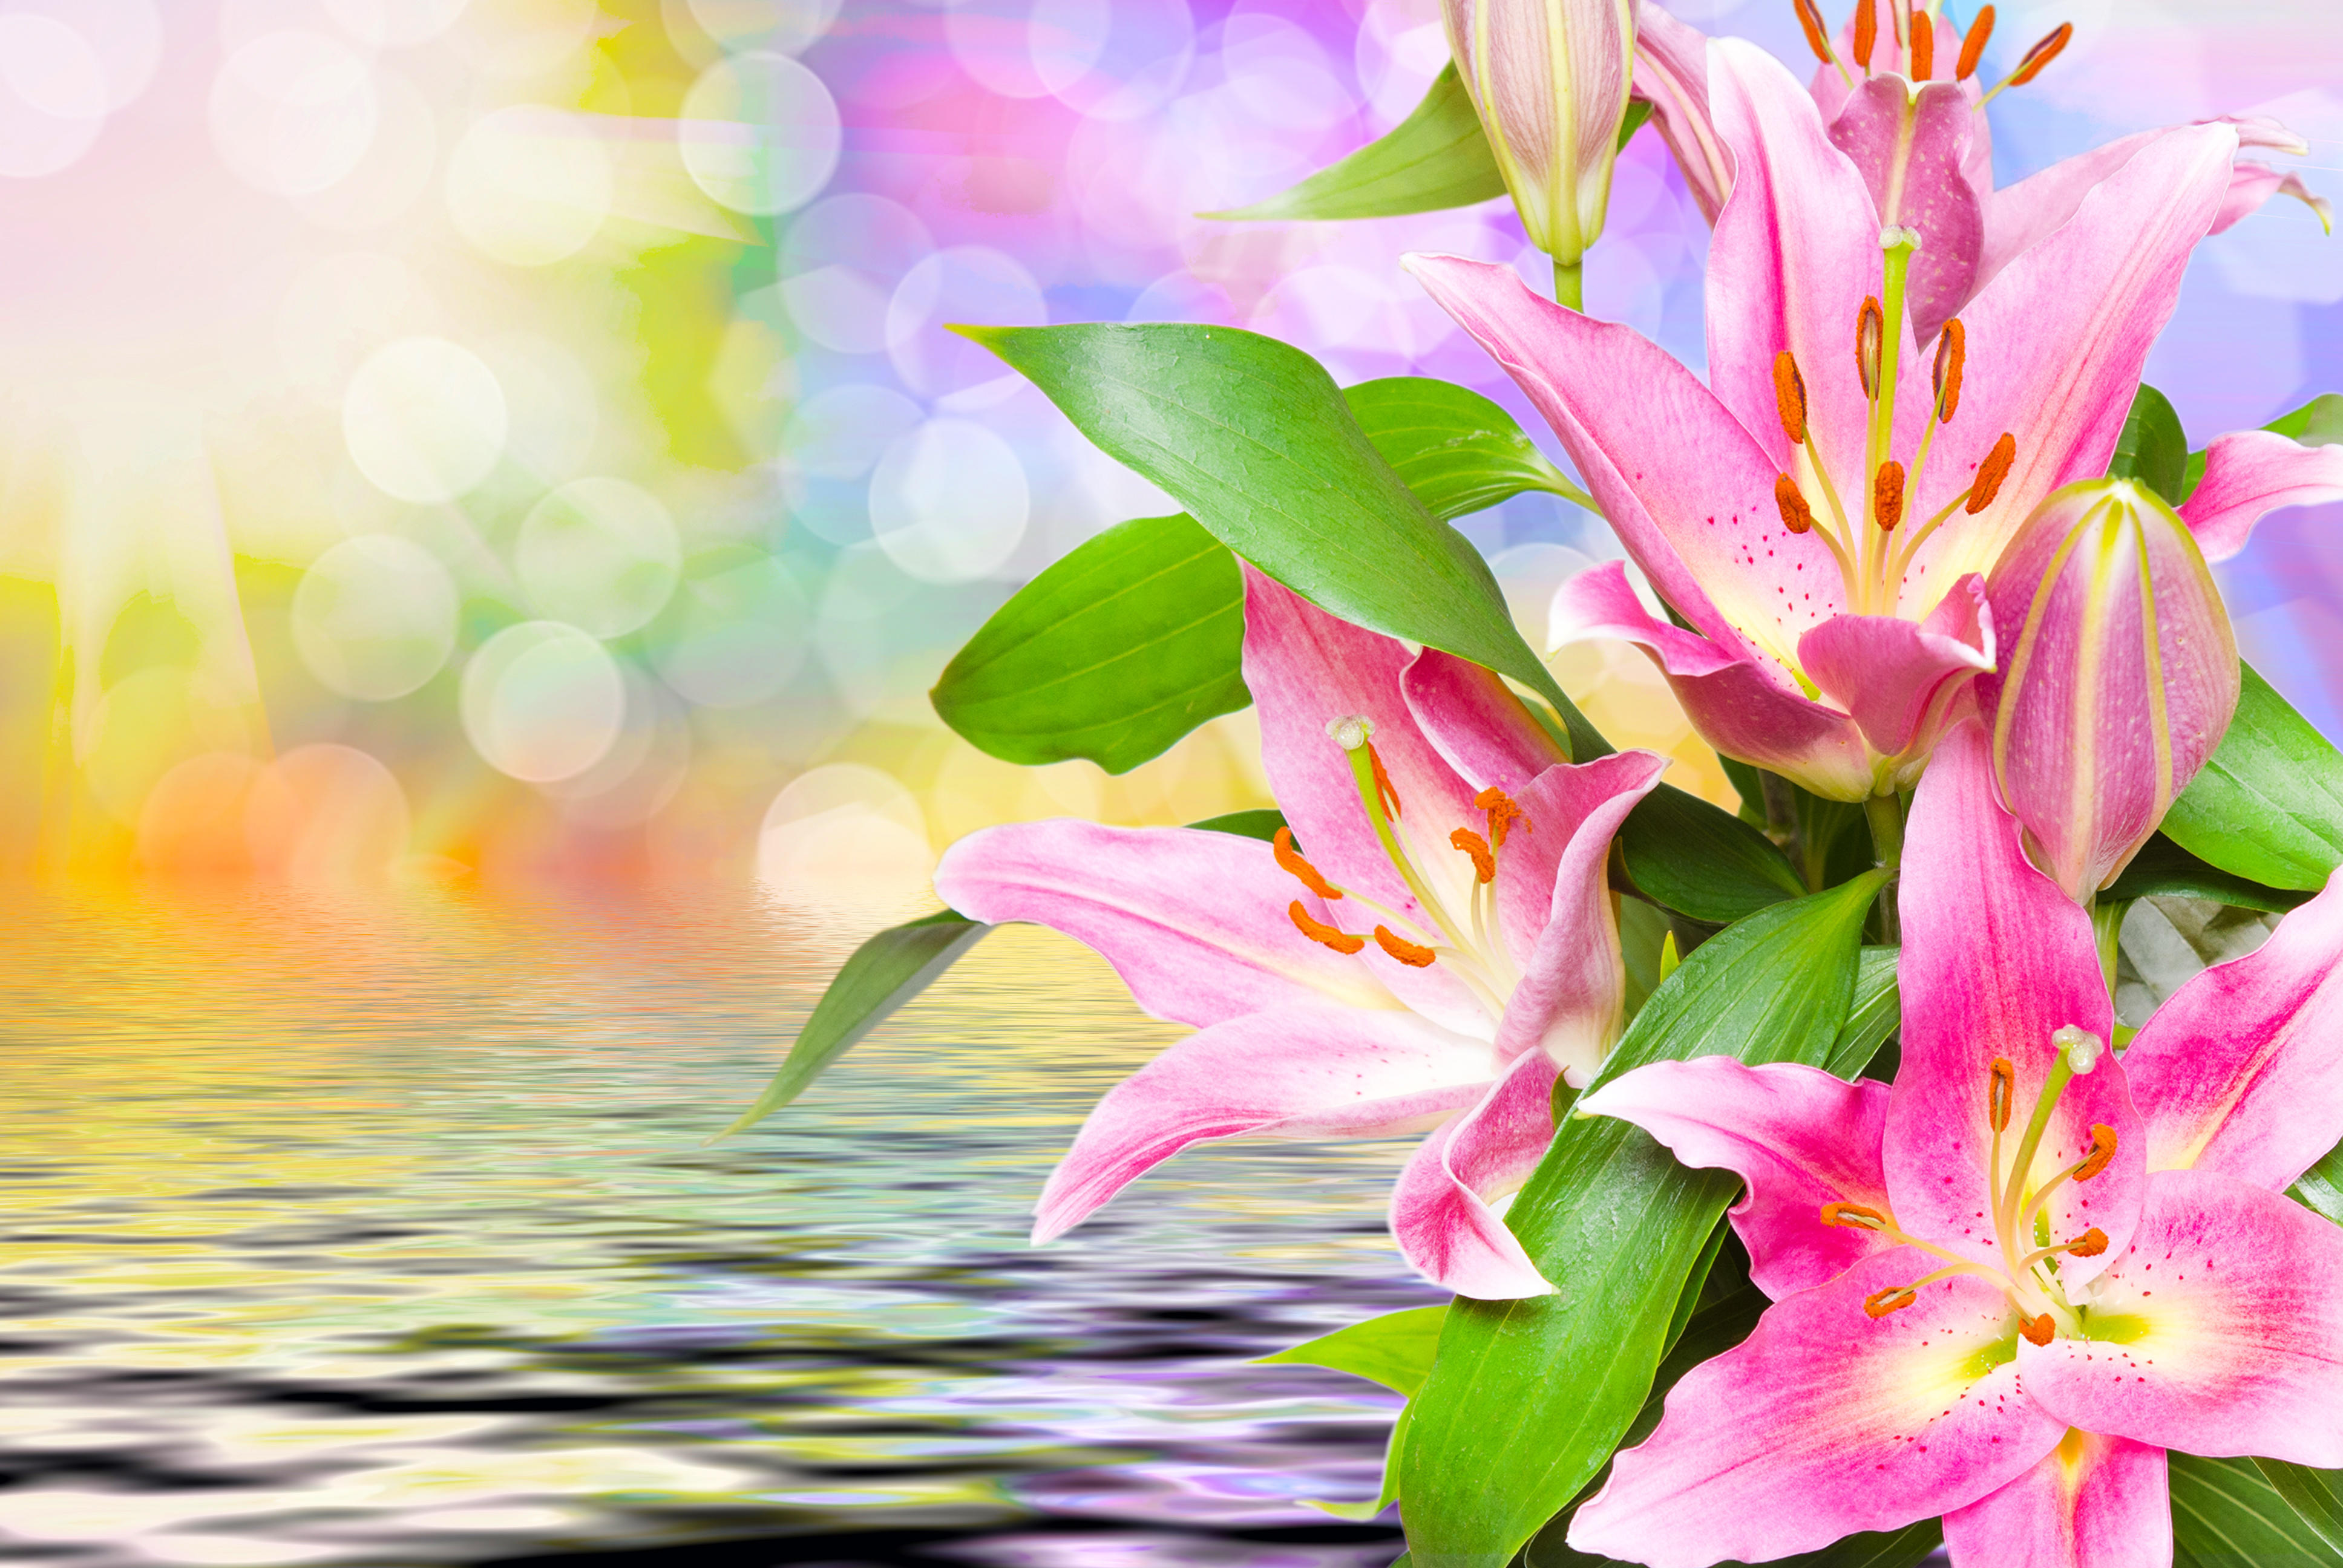 Фото красивые цветы лилии флора - бесплатные картинки на Fonwall